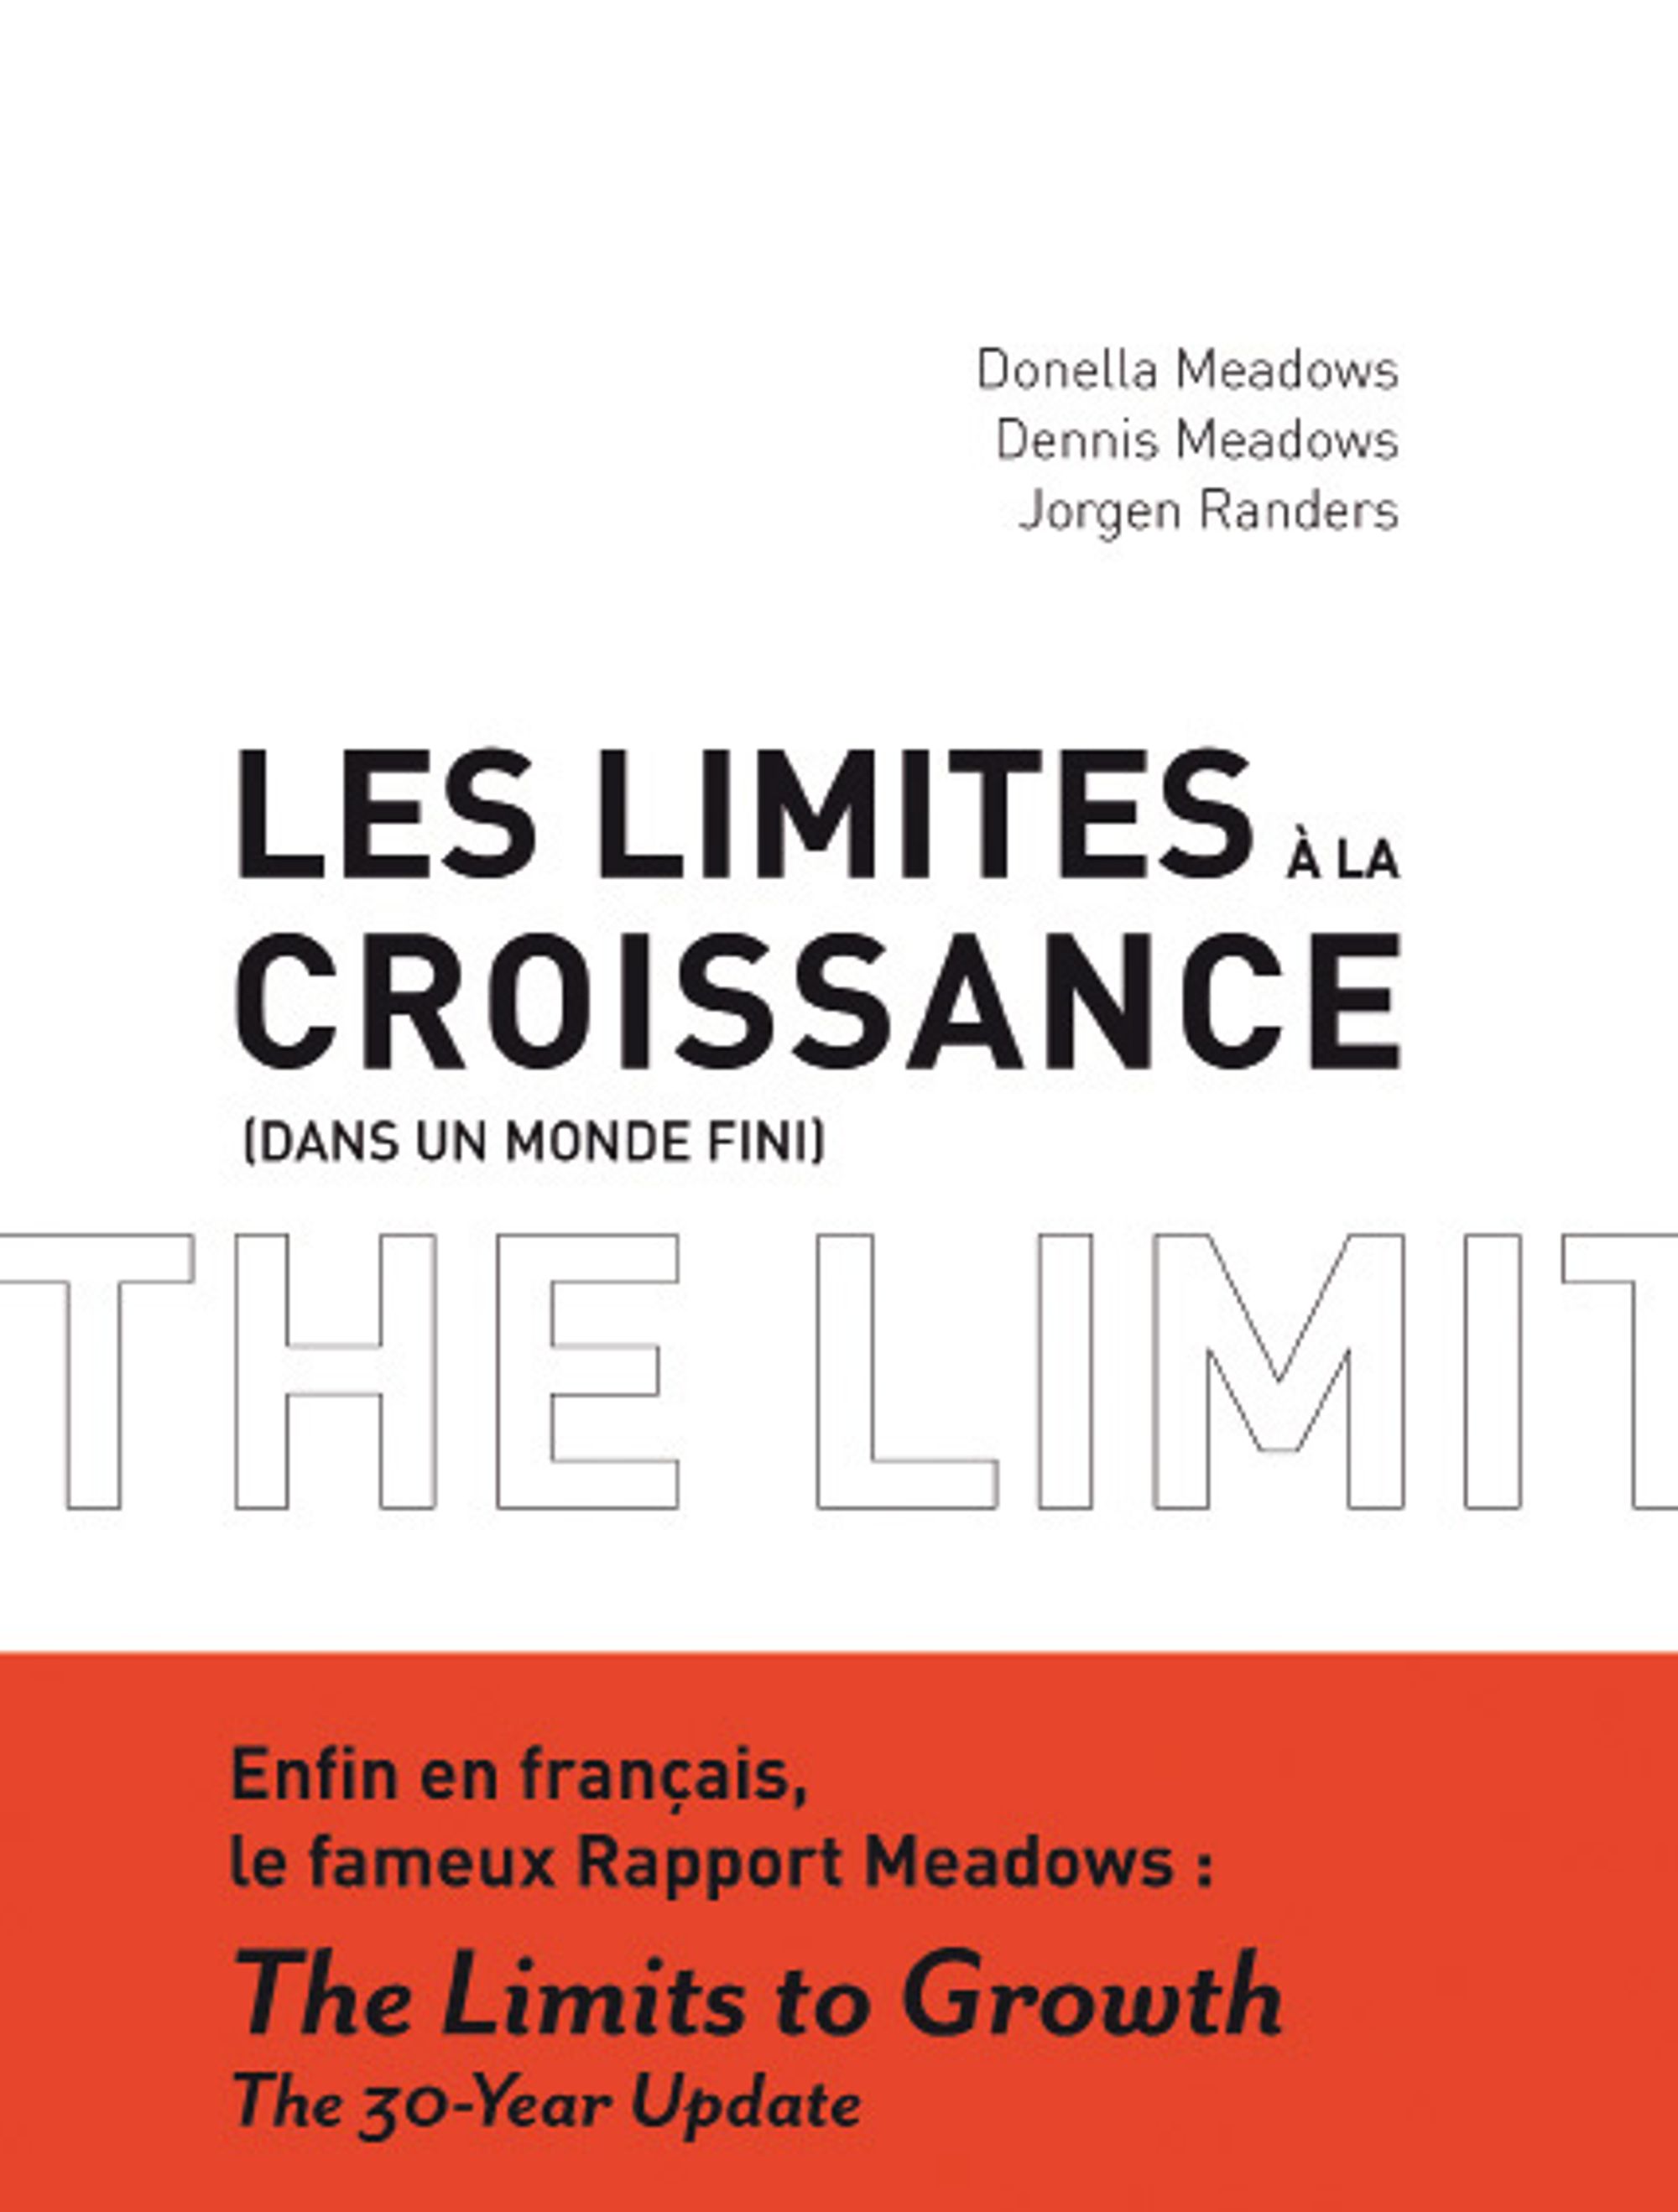 Les limites à la croissance (dans un monde fini) 30 ans après – Donella Meadows, Denis Meadows et Jorgen Randers – 2004 – Jean-Marc Jancovici